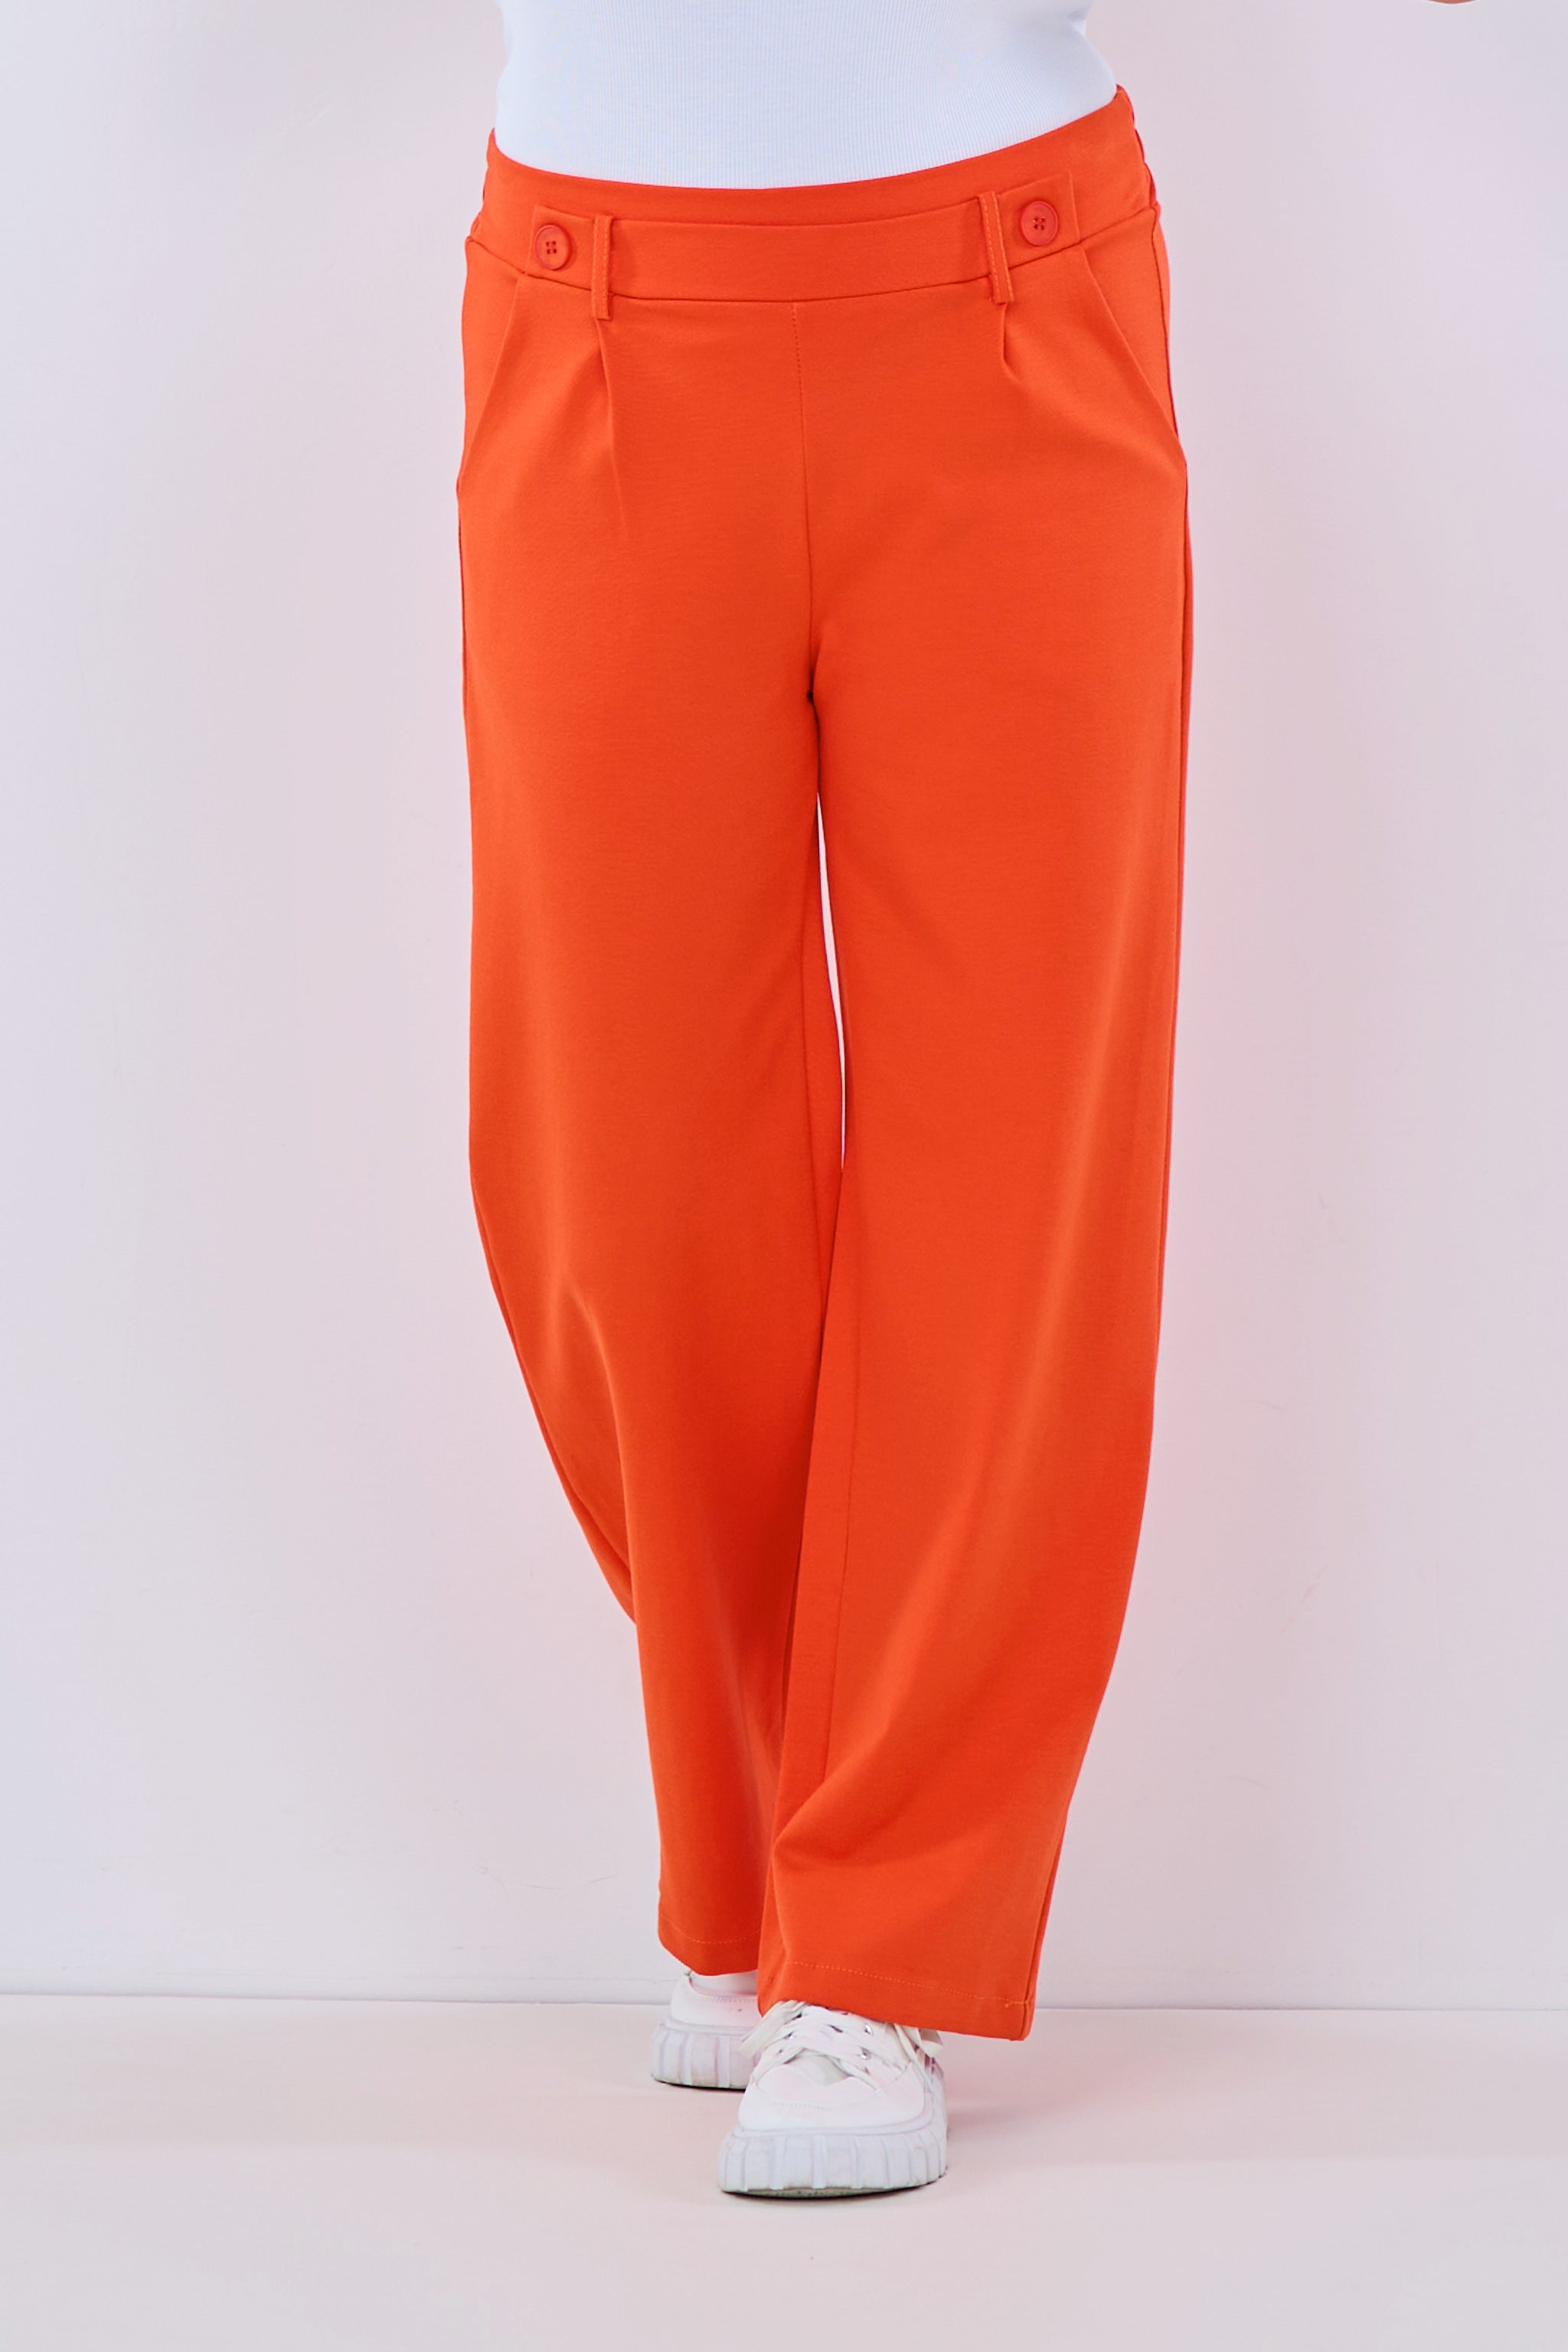 Anzughose, orange von Trends & Lifestyle